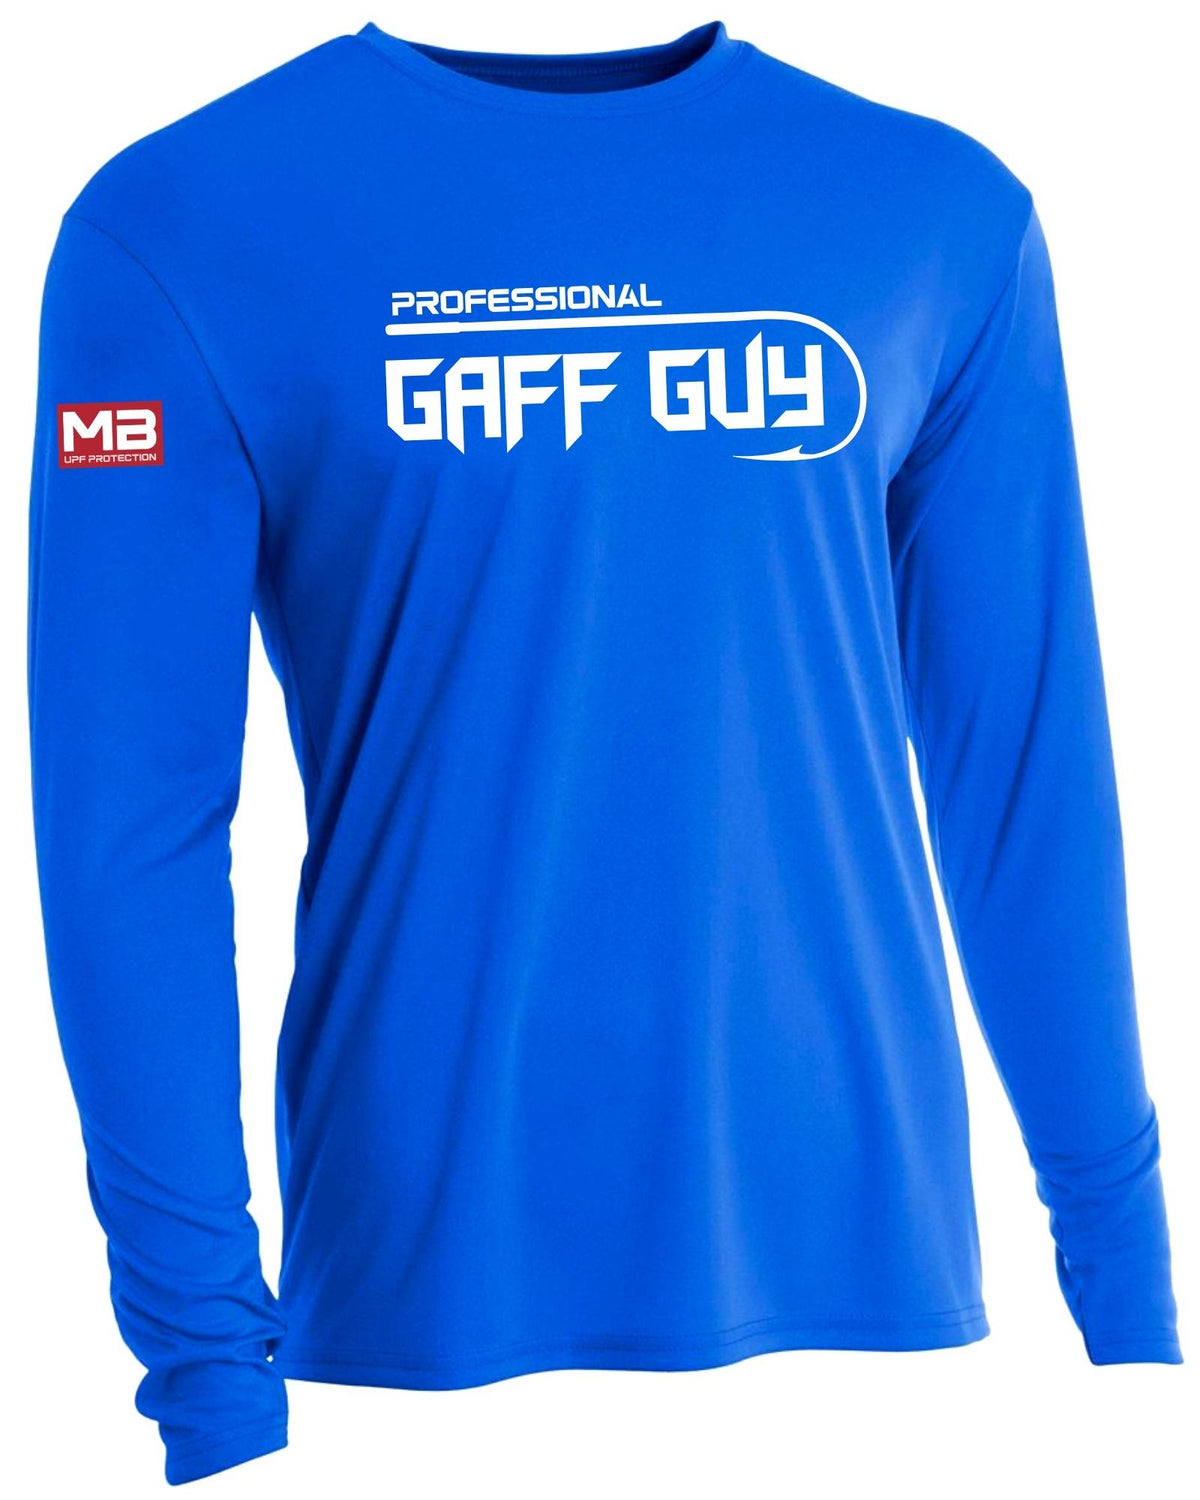 MadBull Professional Gaff Guy Performance Fishing Shirt